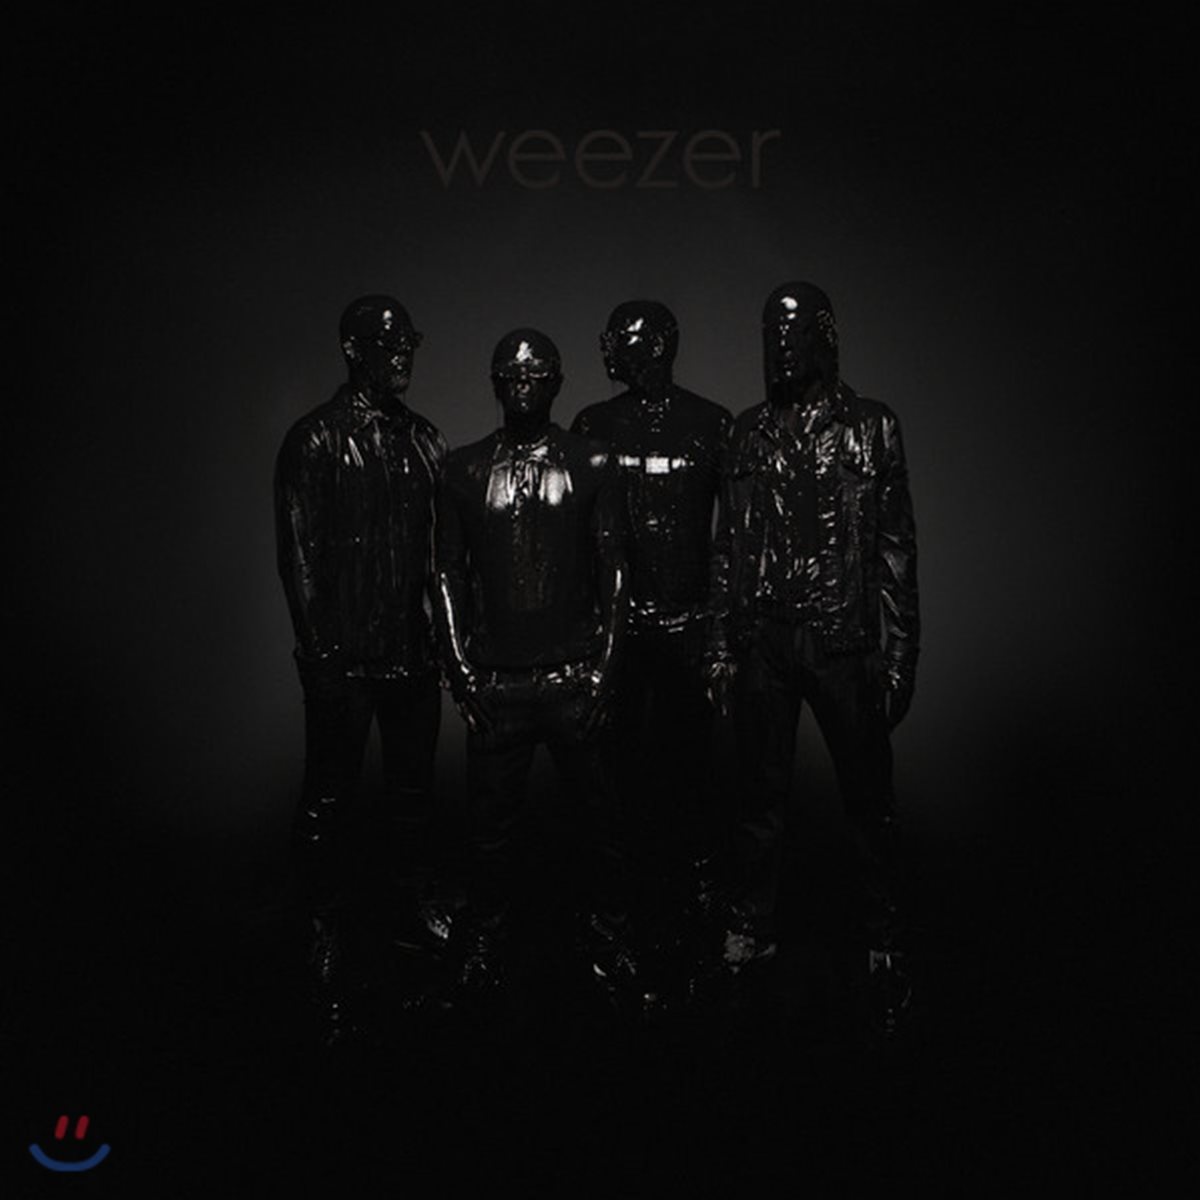 Weezer - Weezer (Black Album) 위저 13집 [LP]